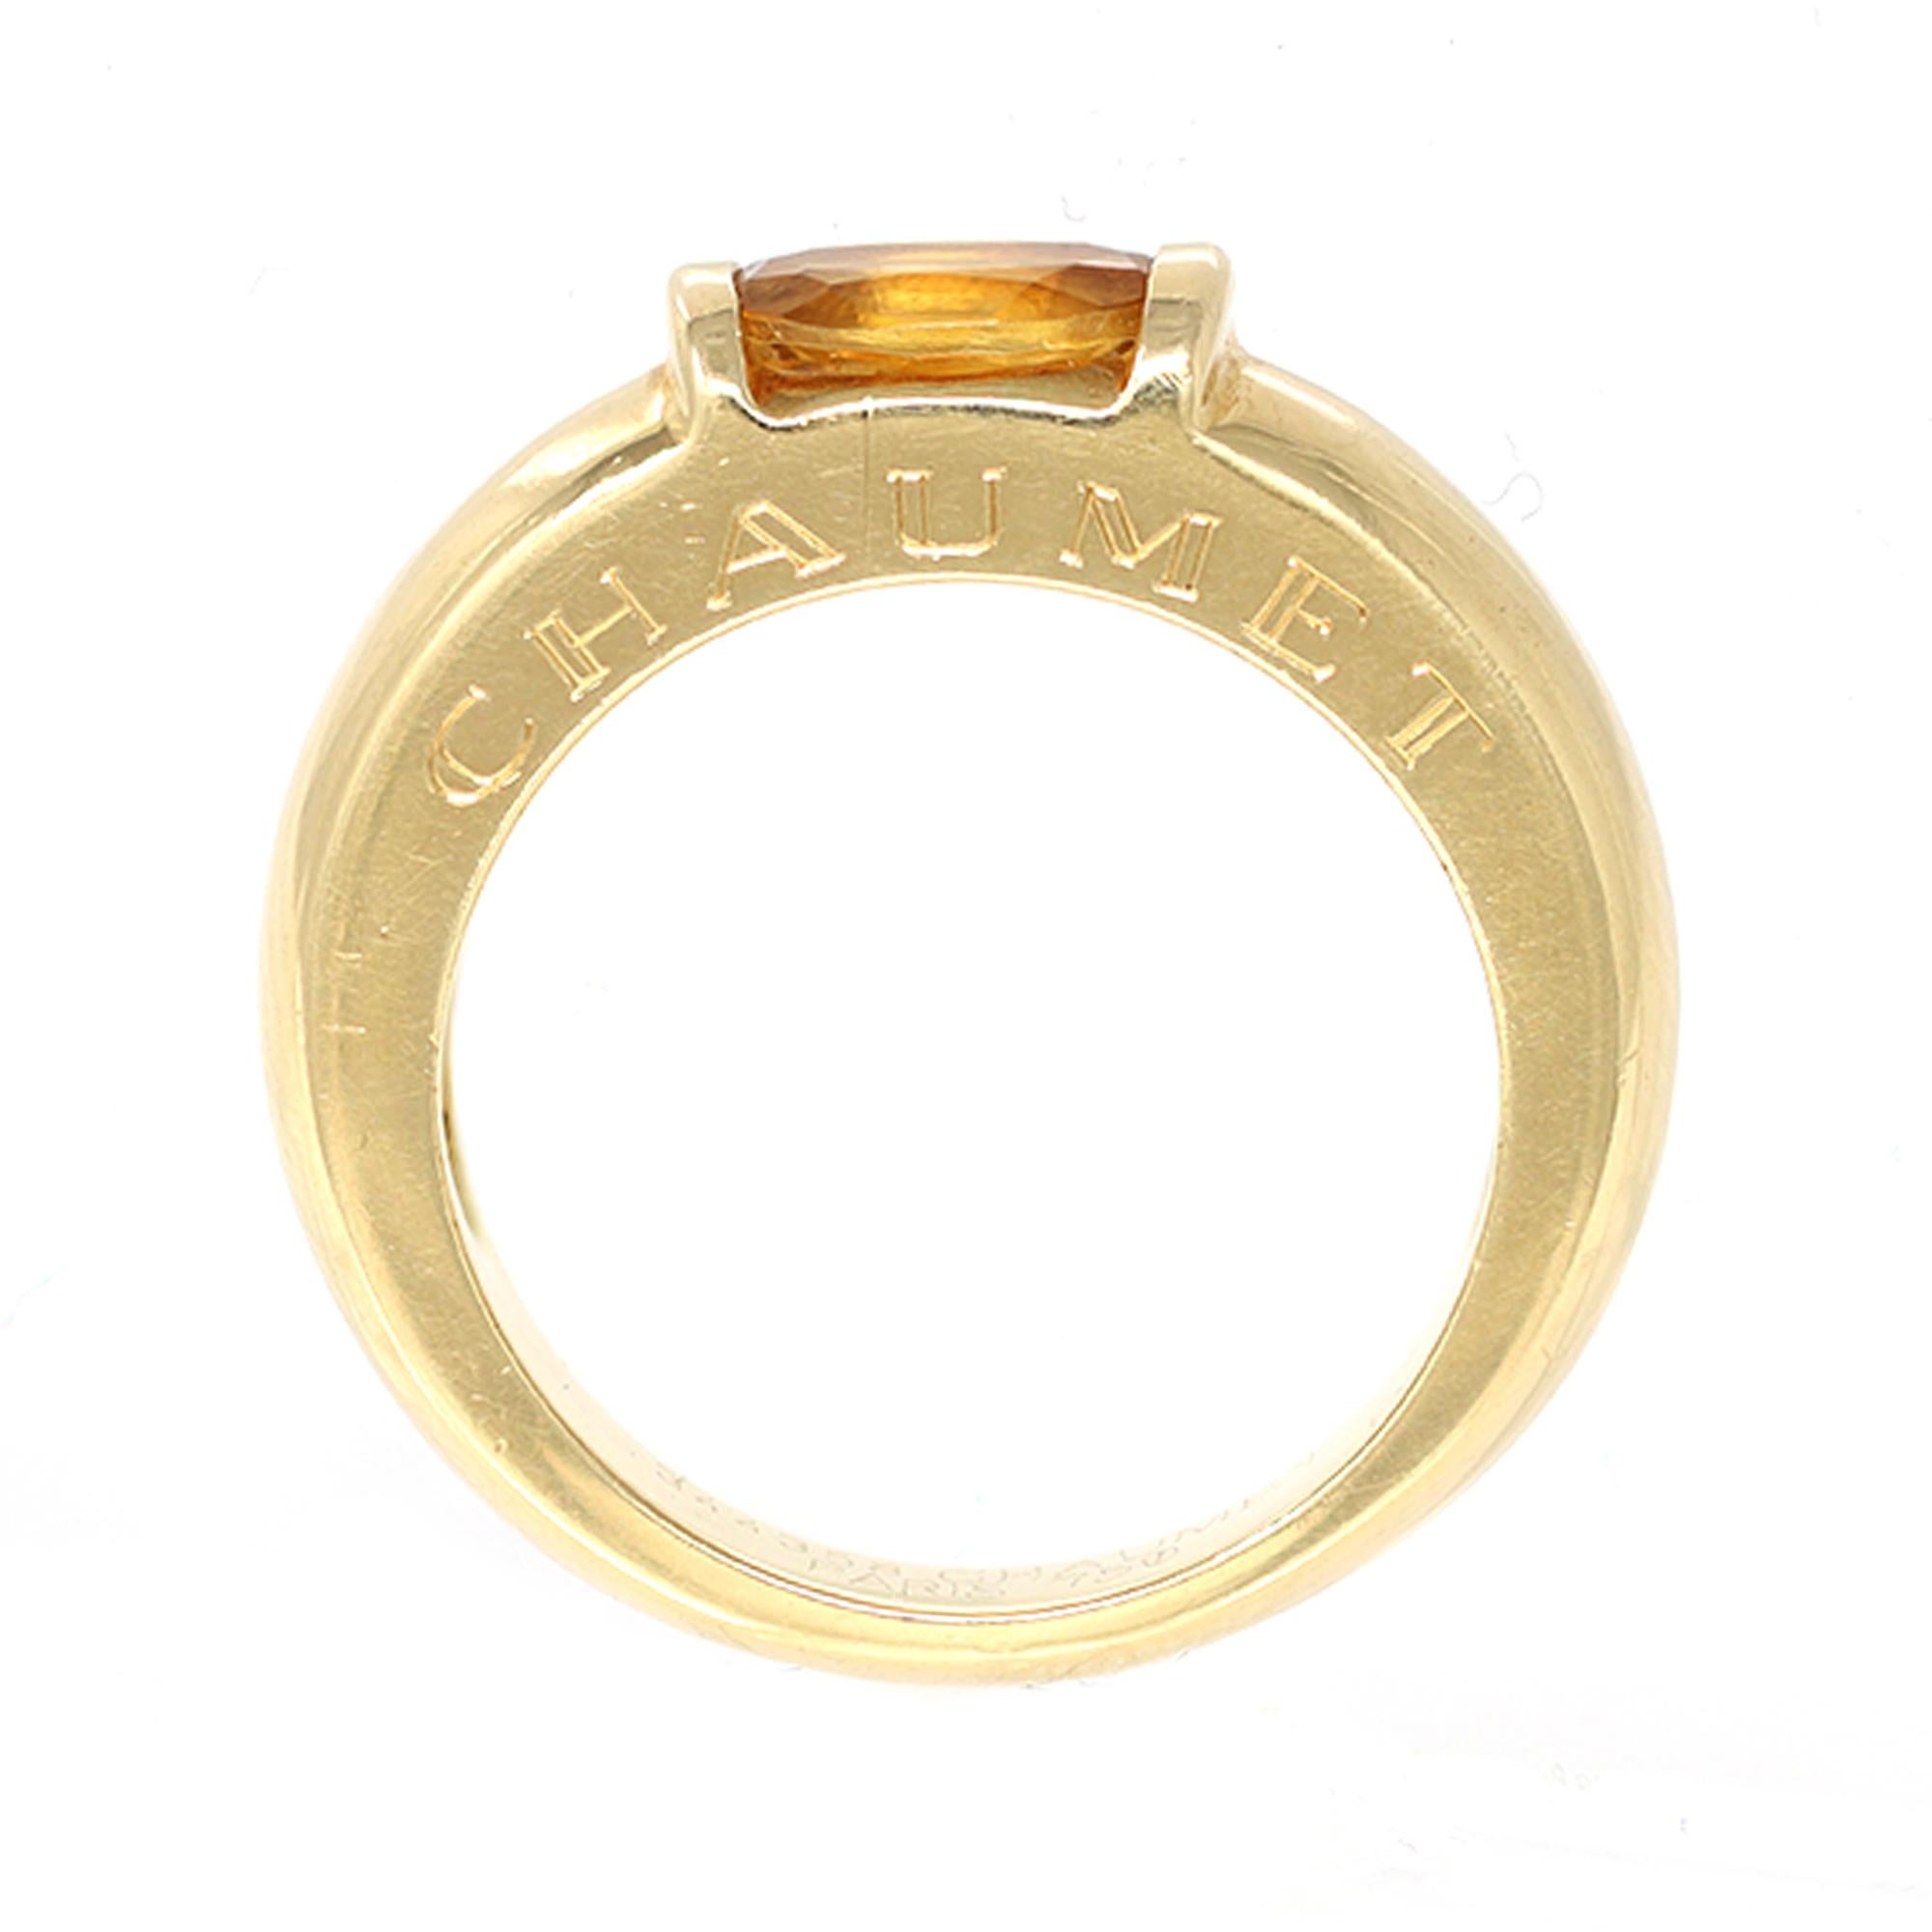 La bague à anneau de la maison française de joaillerie Chaumet Paris est ornée d'une citrine de forme ovale sertie dans de l'or jaune 18 carats. La citrine est sertie sous tension et porte la gravure Chaumet sur le côté de la tige. Le poids brut est